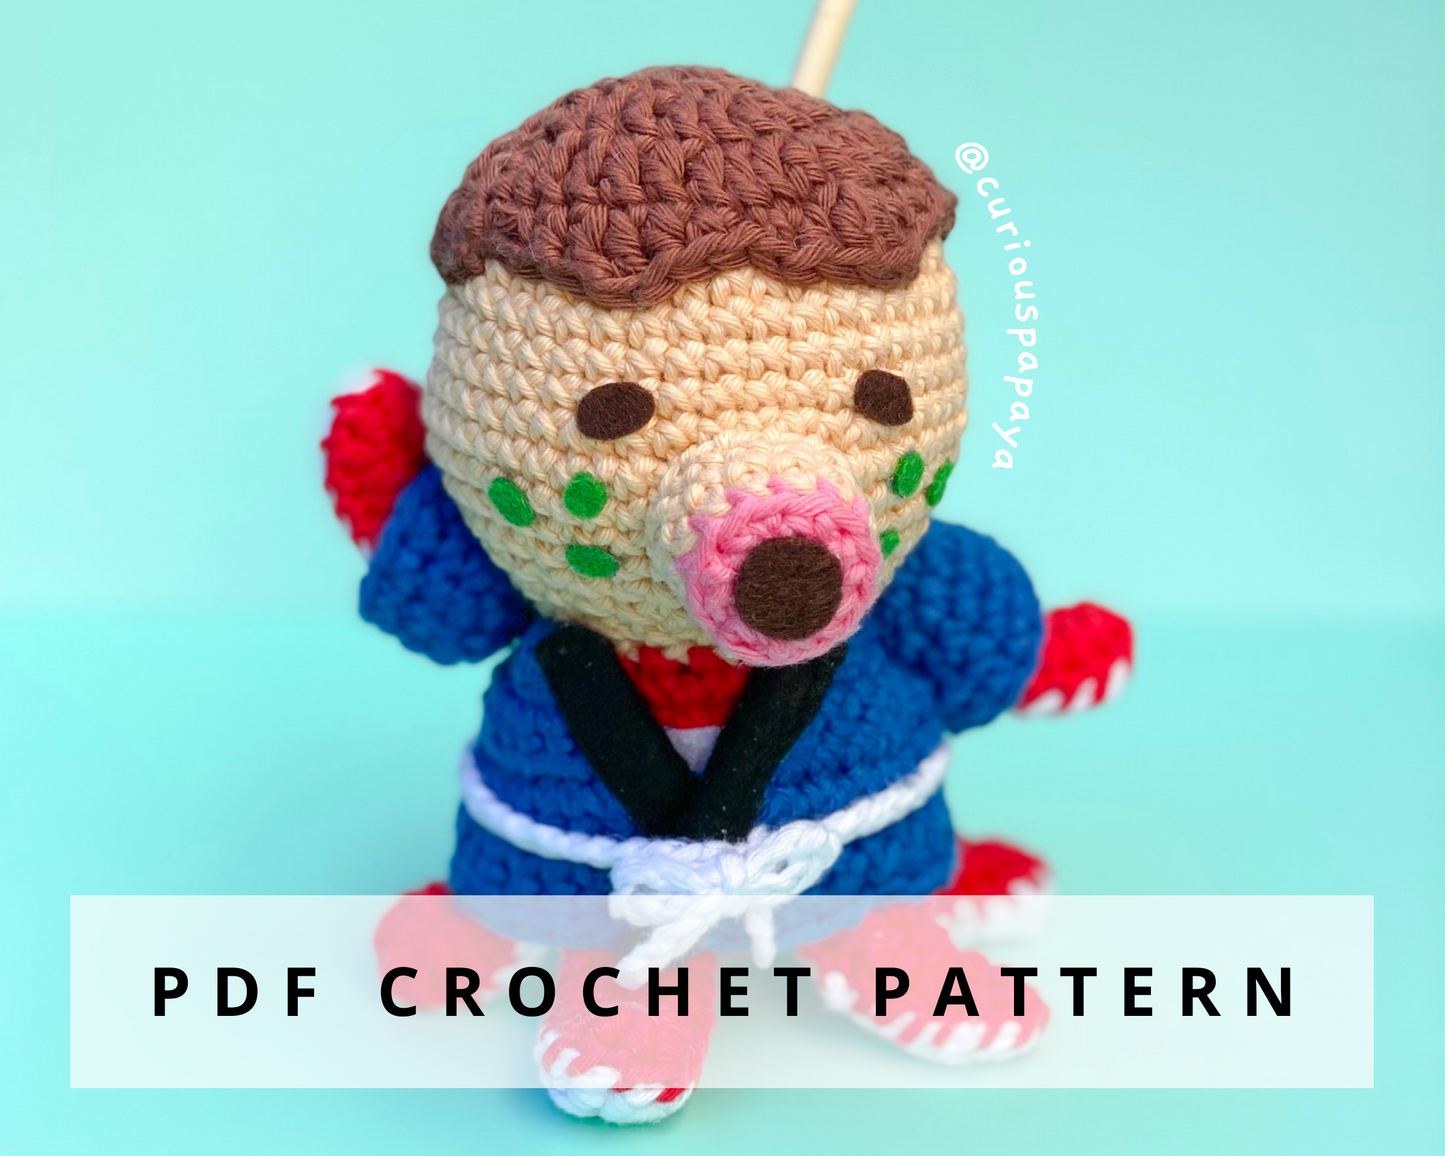 Zucker Crochet Pattern